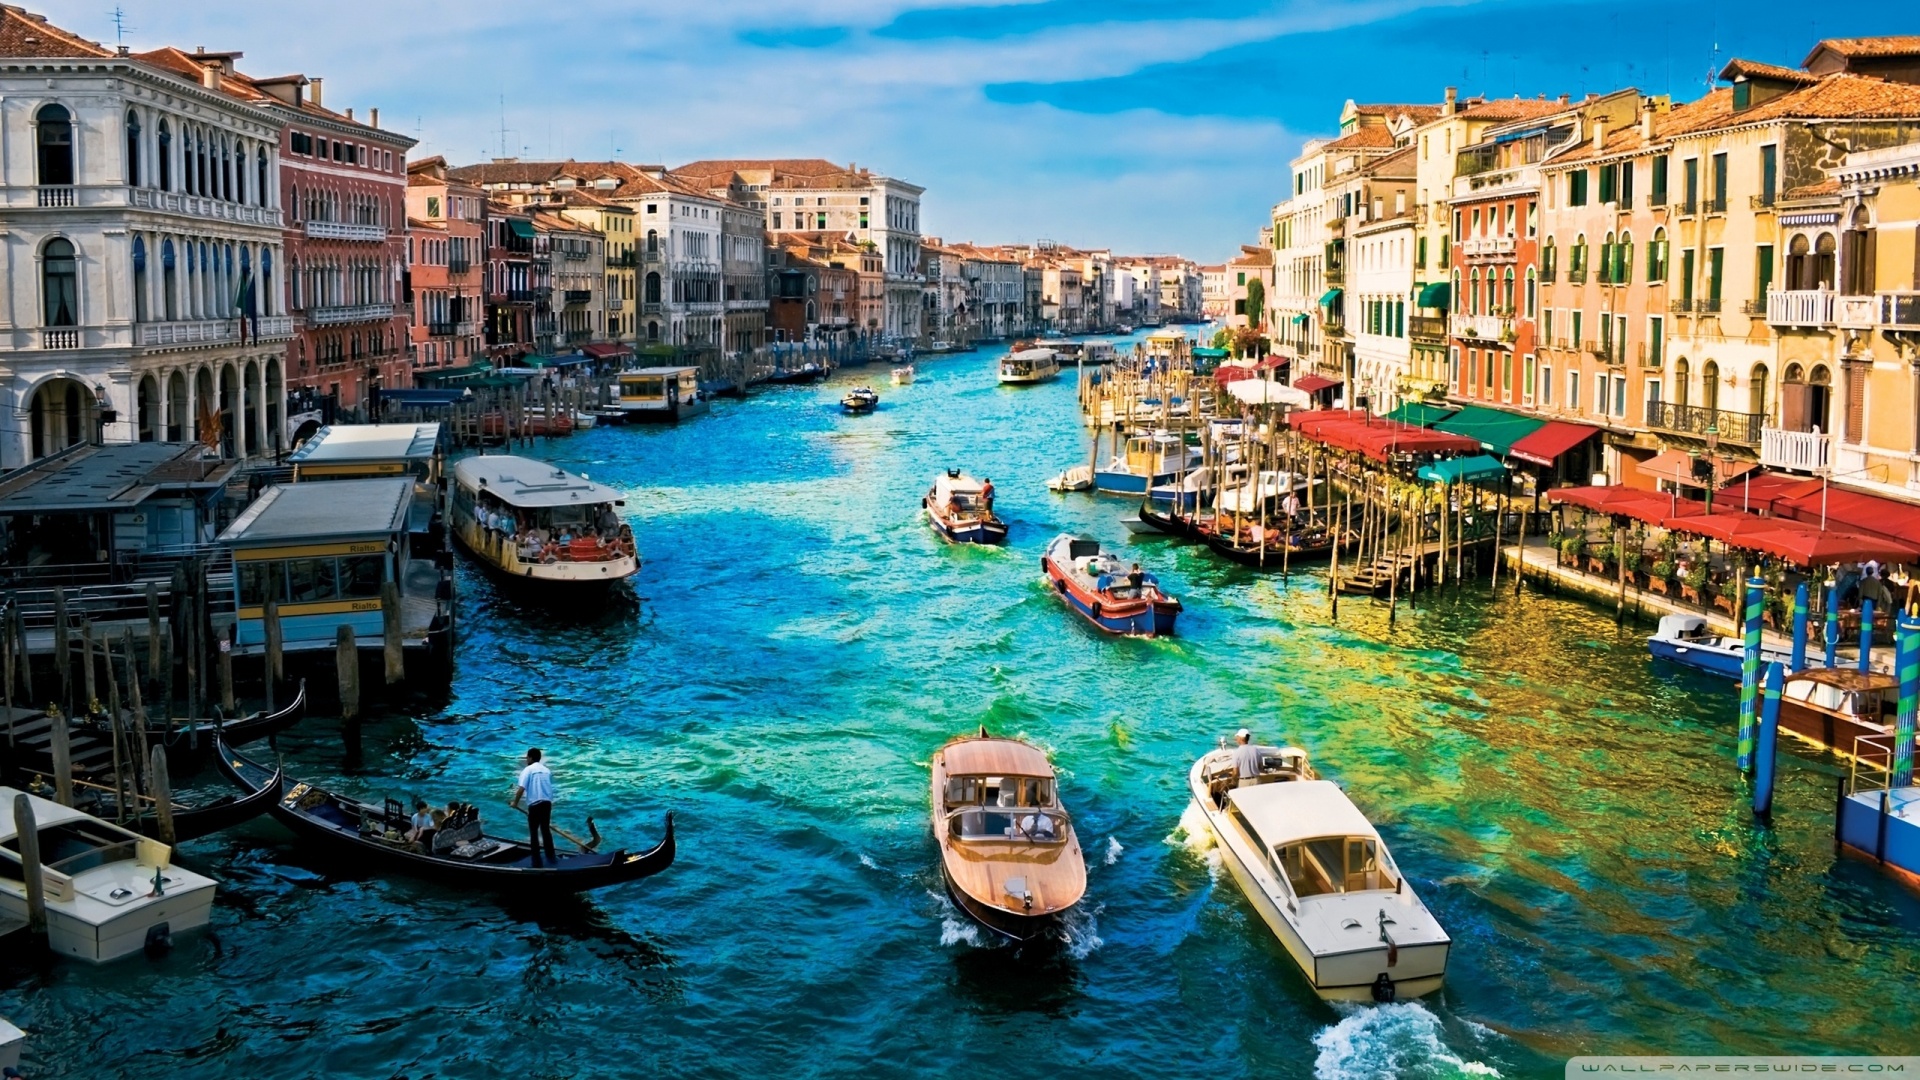 fond d'écran venecia,transport par eau,voie navigable,plan d'eau,canal,bateau